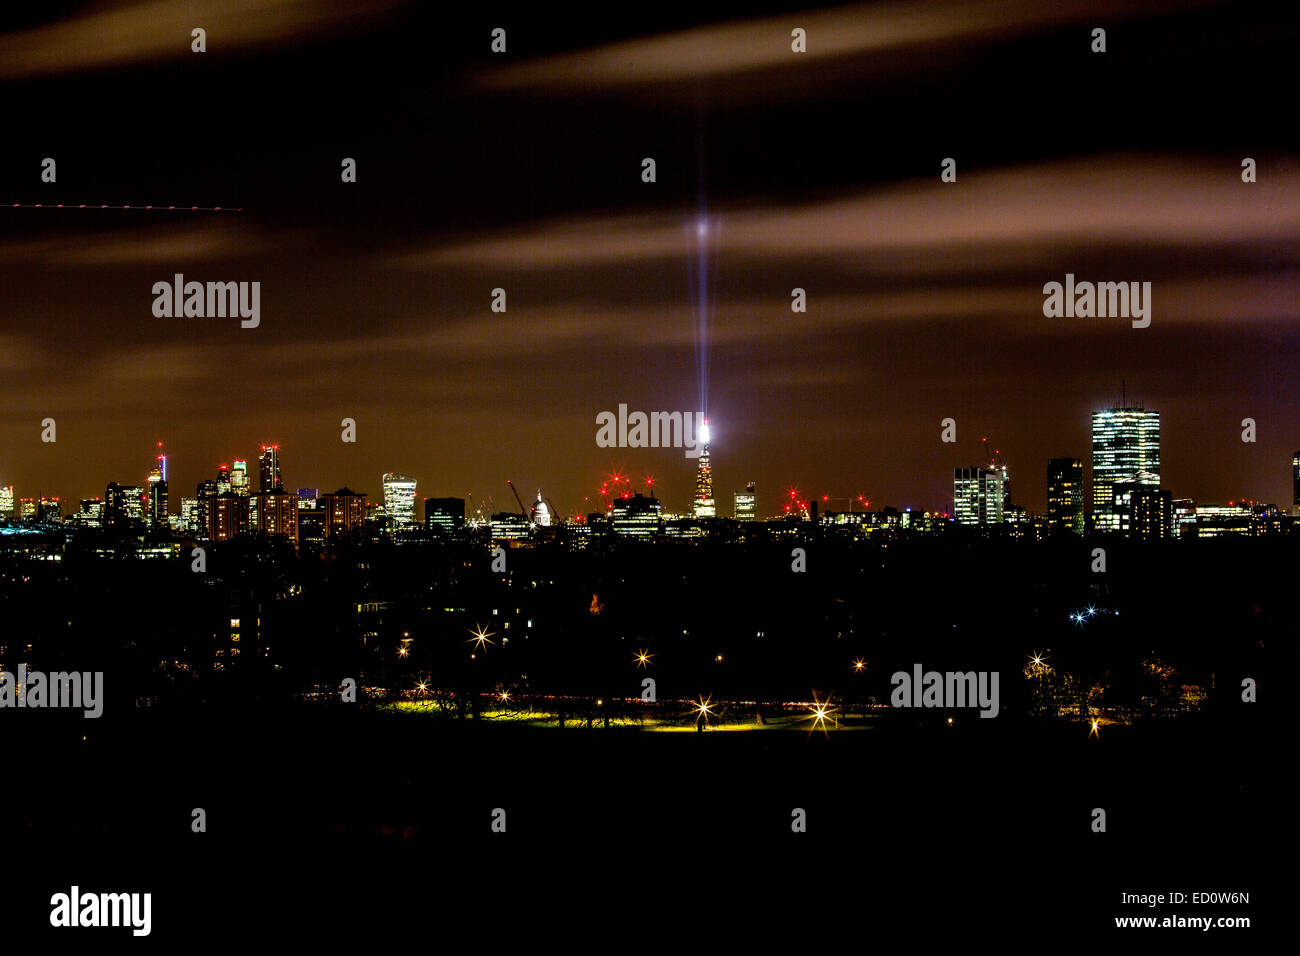 Le Shard London Skyline nuit lumière Banque D'Images